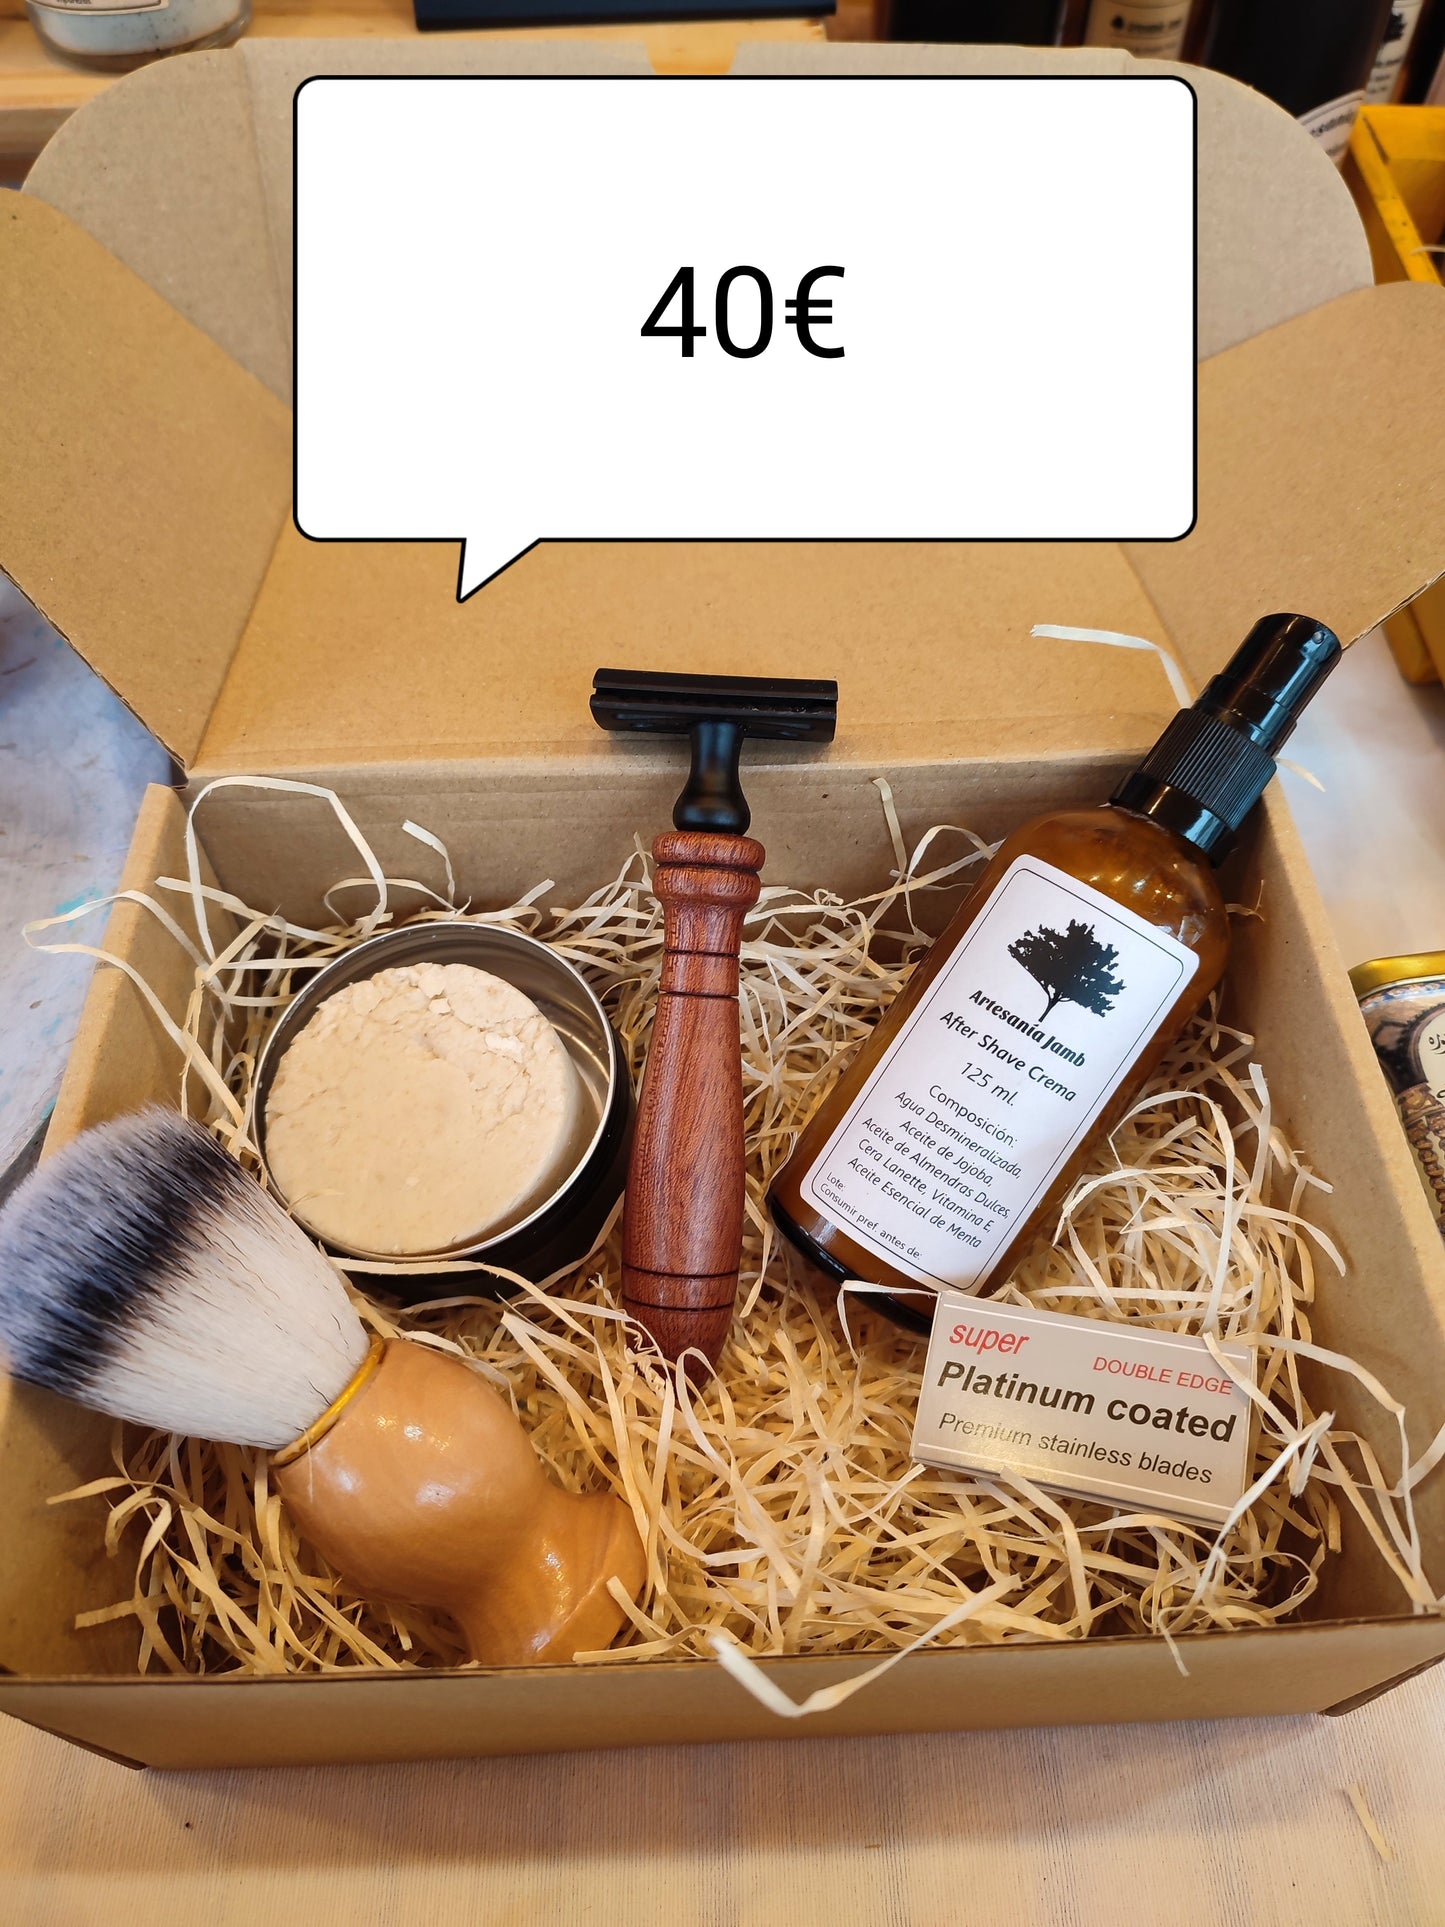 Kit de Afeitar - Jabón Natural + Brocha de pelo delicado + After Shave + Maquina de Afeitar y Recambios, regalo ideal para hombres, regalo papá, regalo día del padre, cuidado facial.